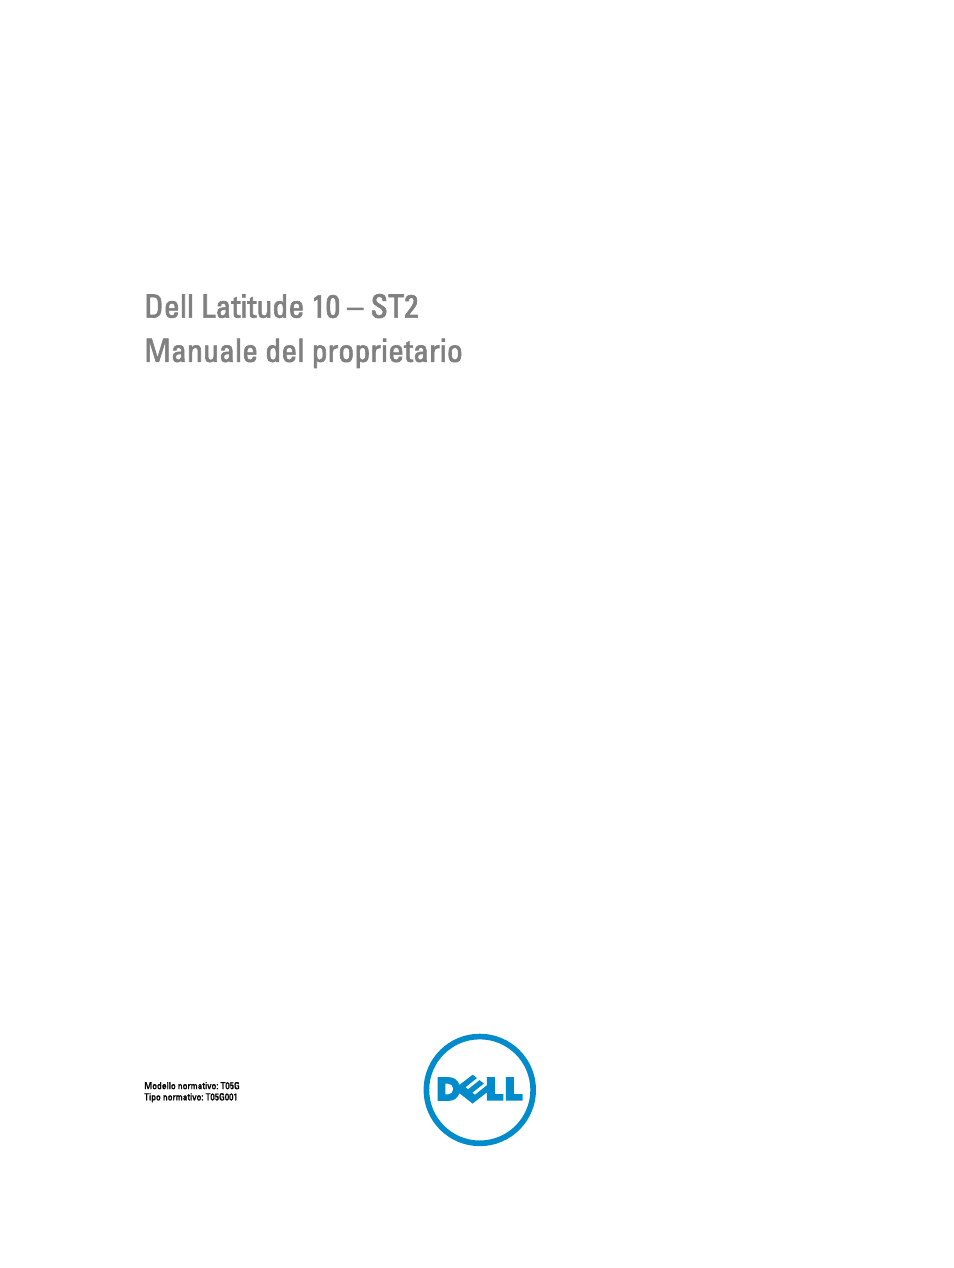 Dell Latitude 10 (Late 2012) Manuale d'uso | Pagine: 47